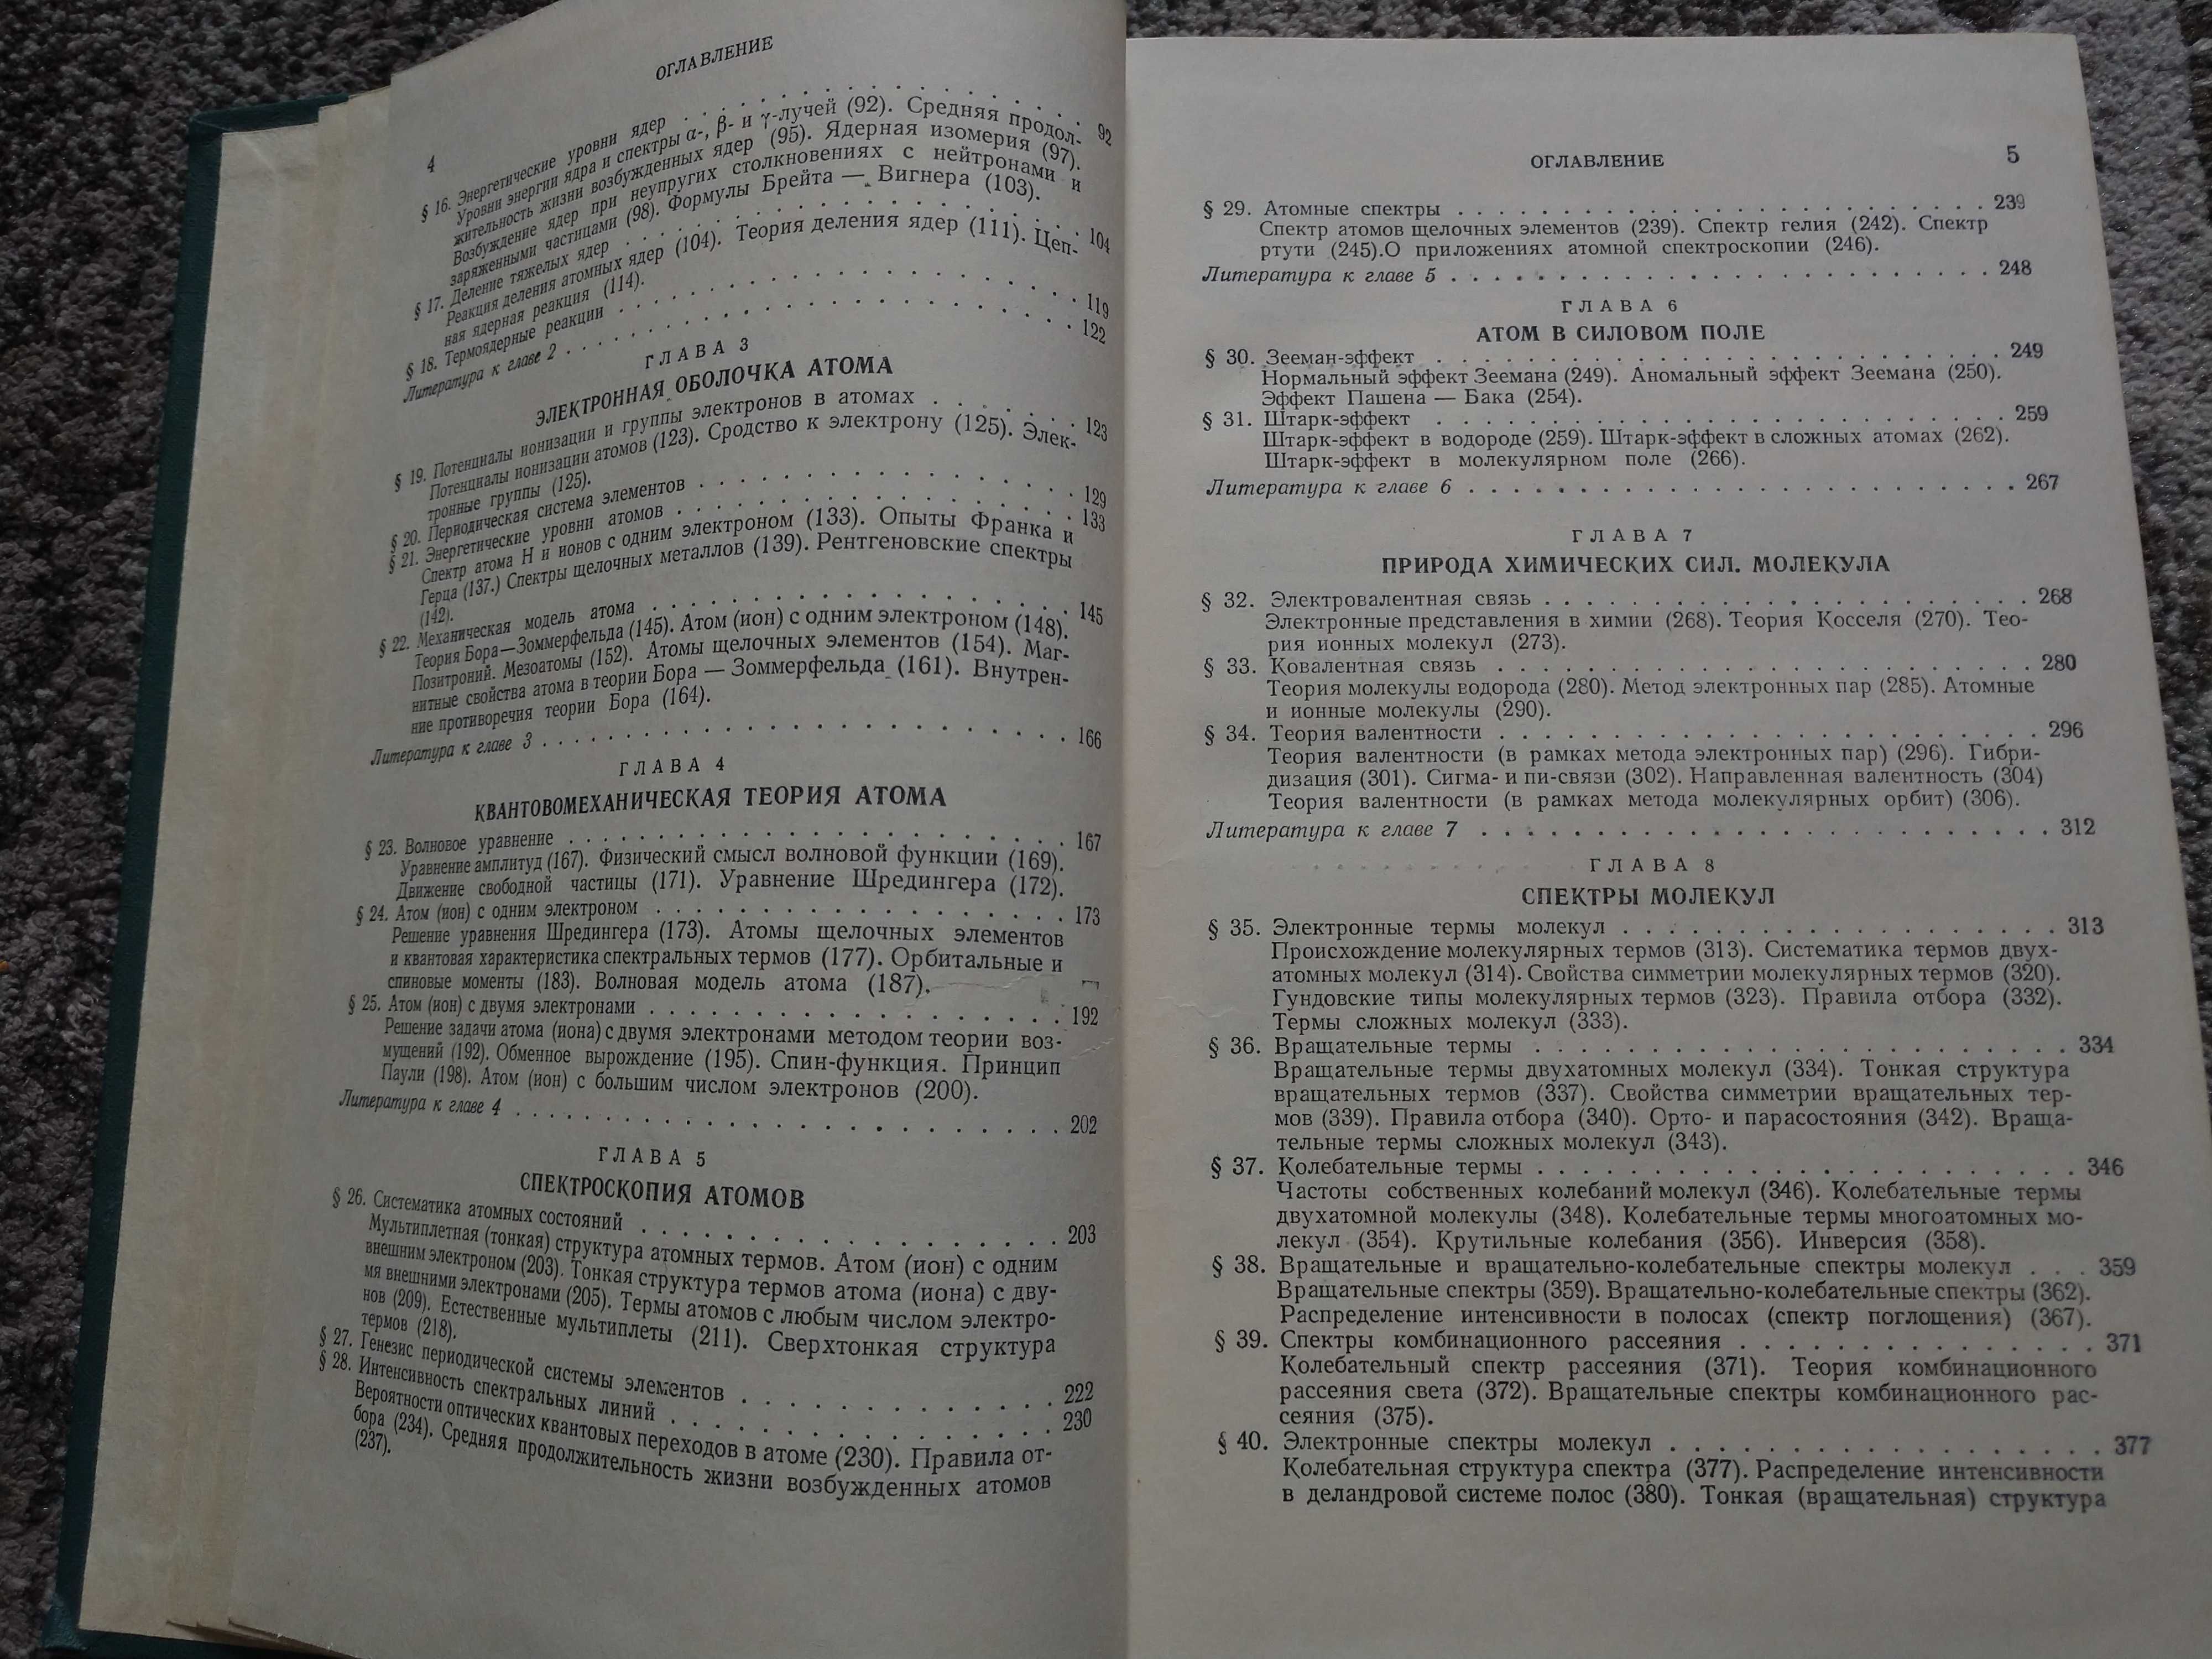 В.Н. Кондратьев Структура атомов и молекул, 1959